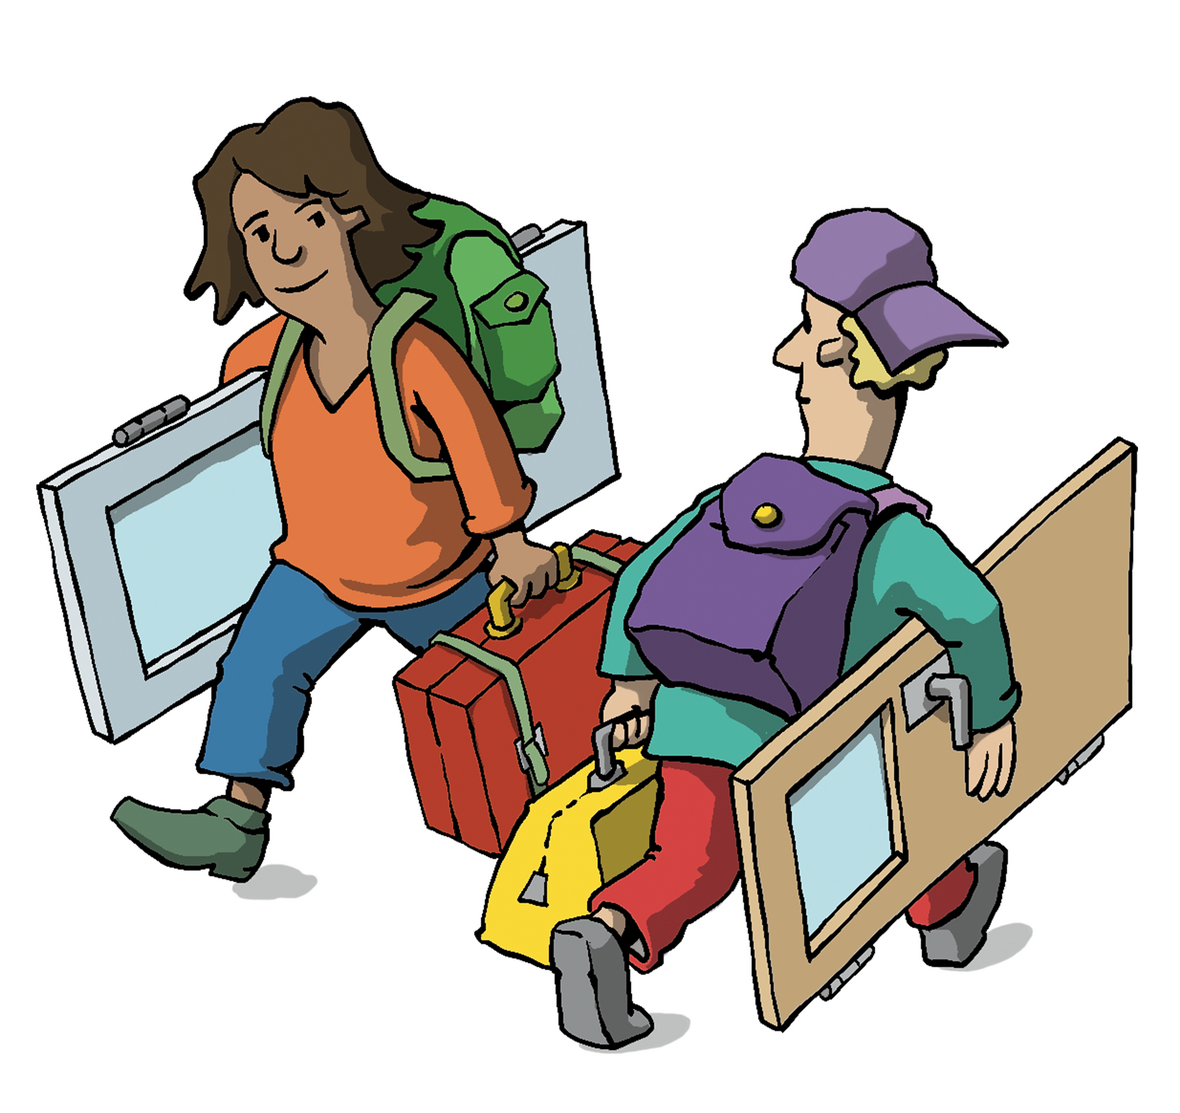 Man sieht zwei Personen mit Reisegepäck und einer Tür unterm Arm. 